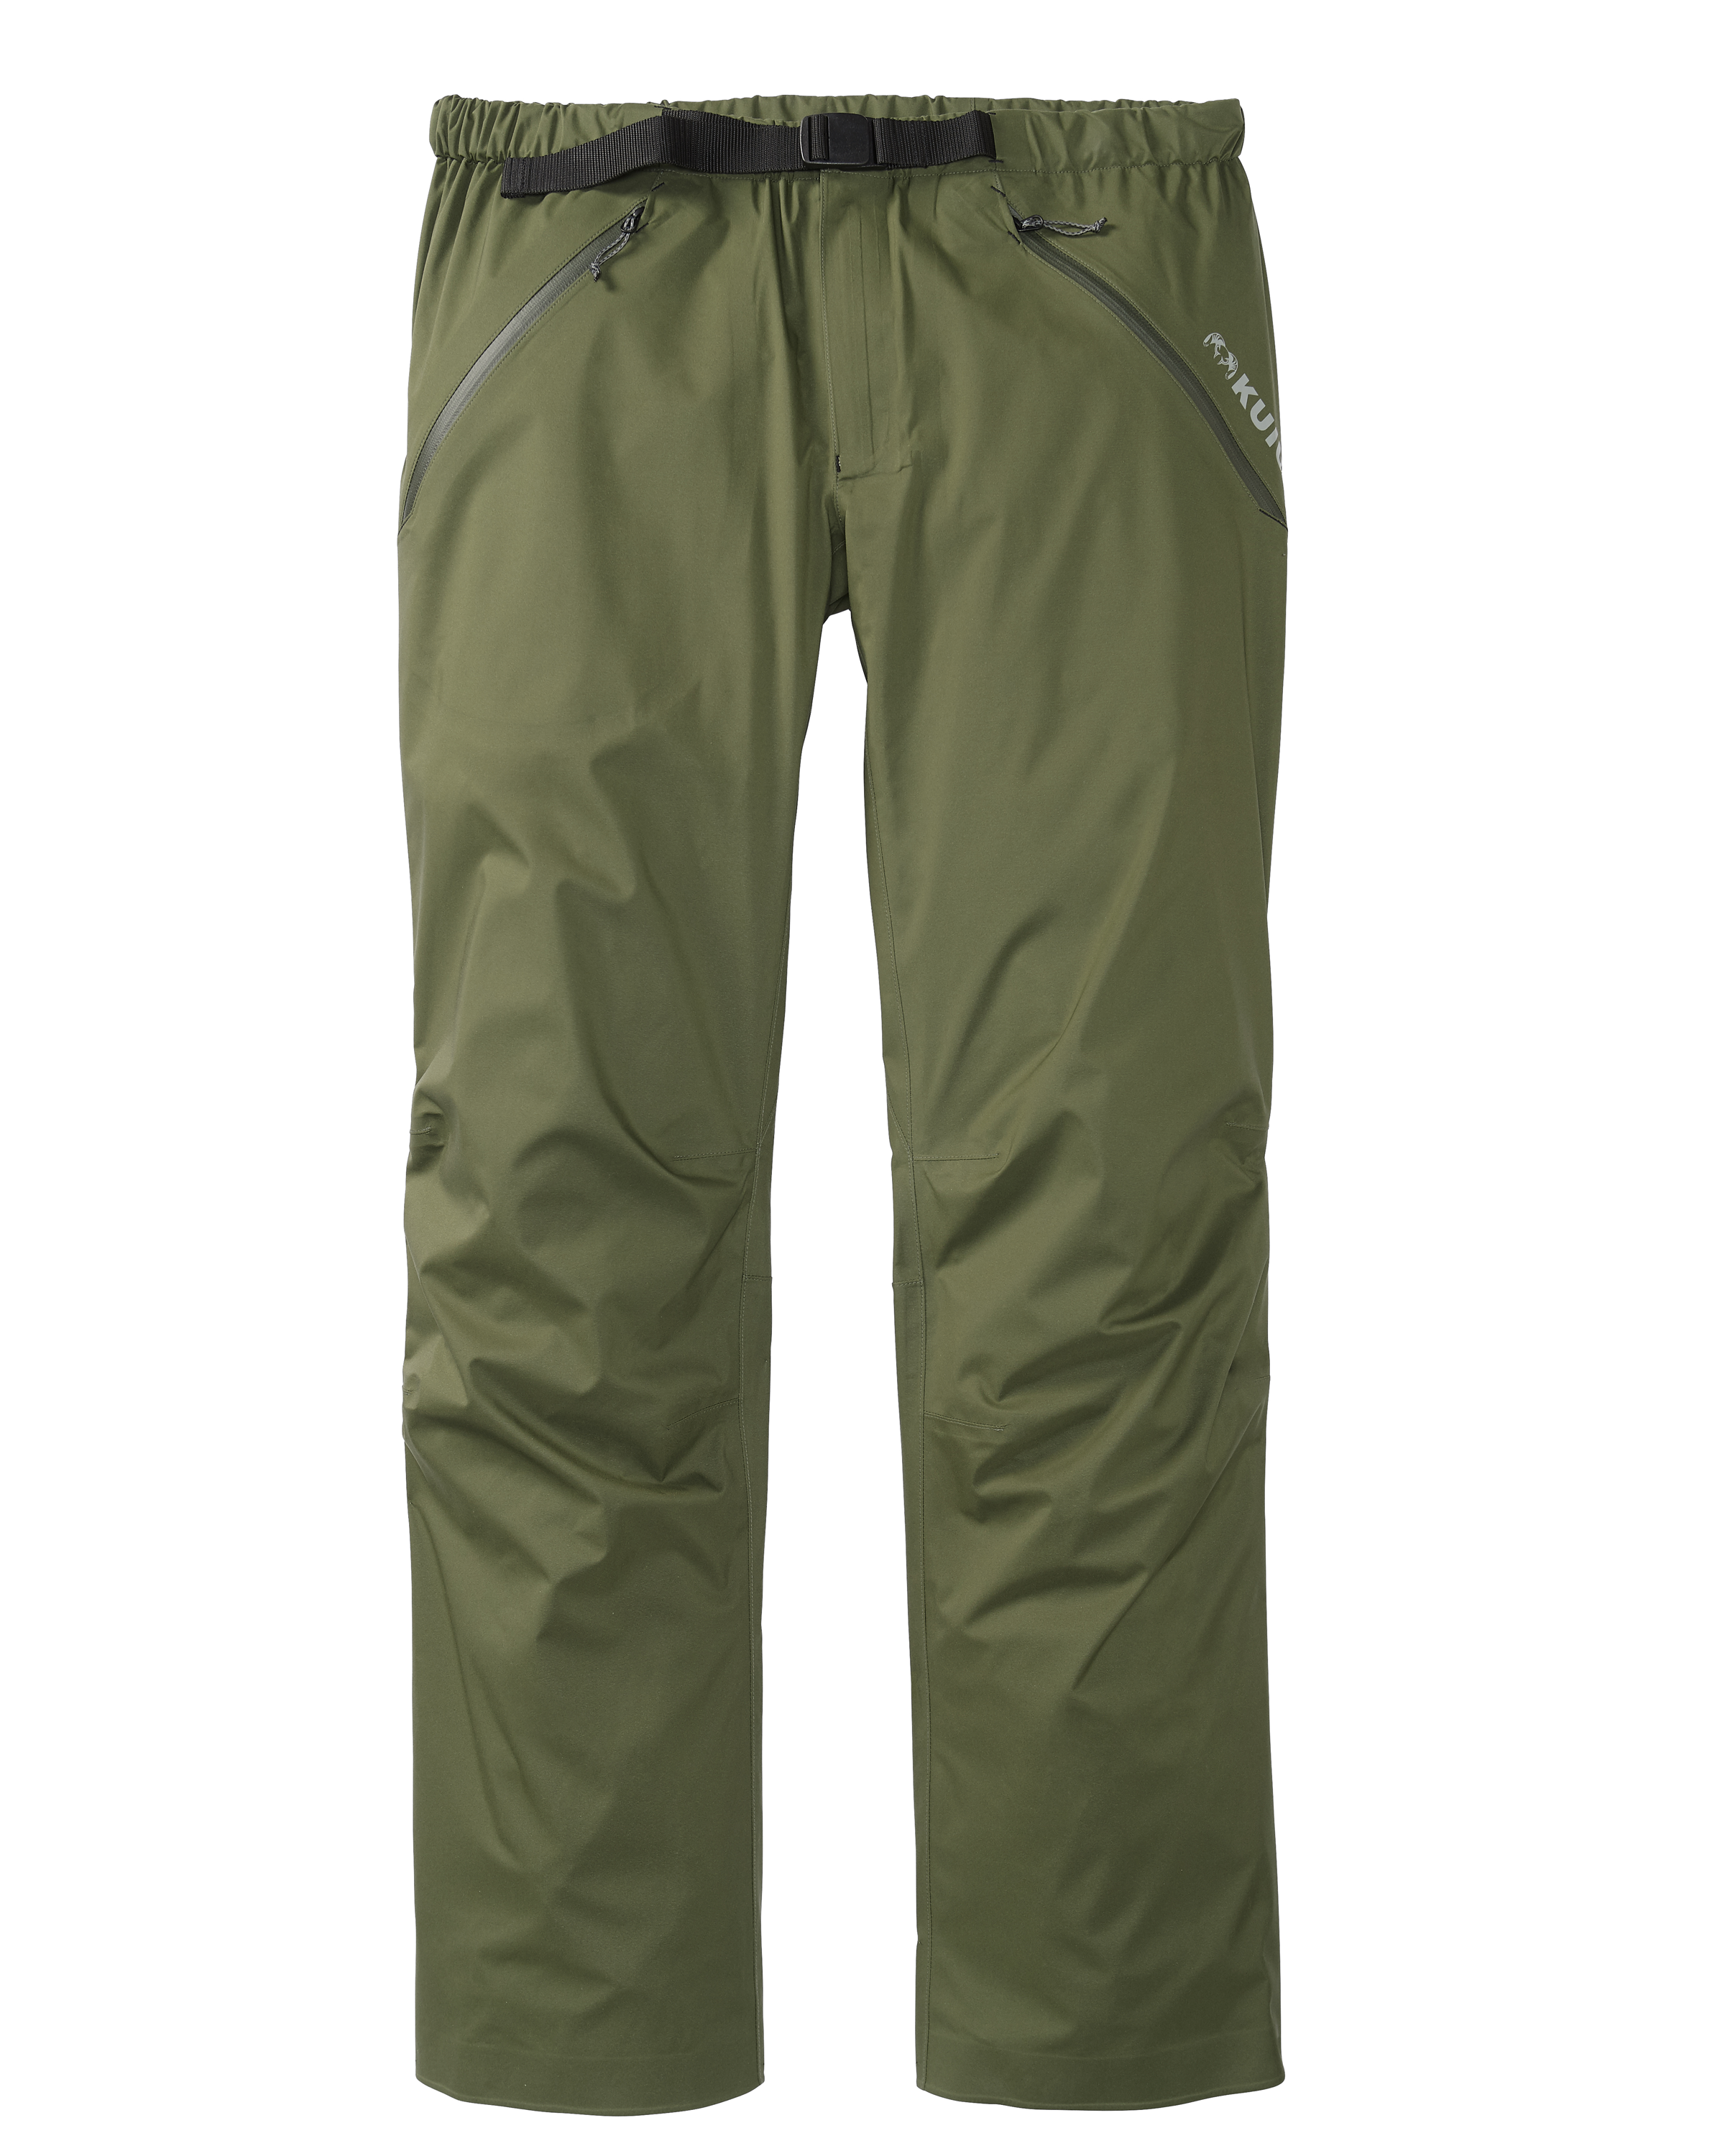 KUIU Northridge Rain Hunting Pant in Olive | Size 2XL